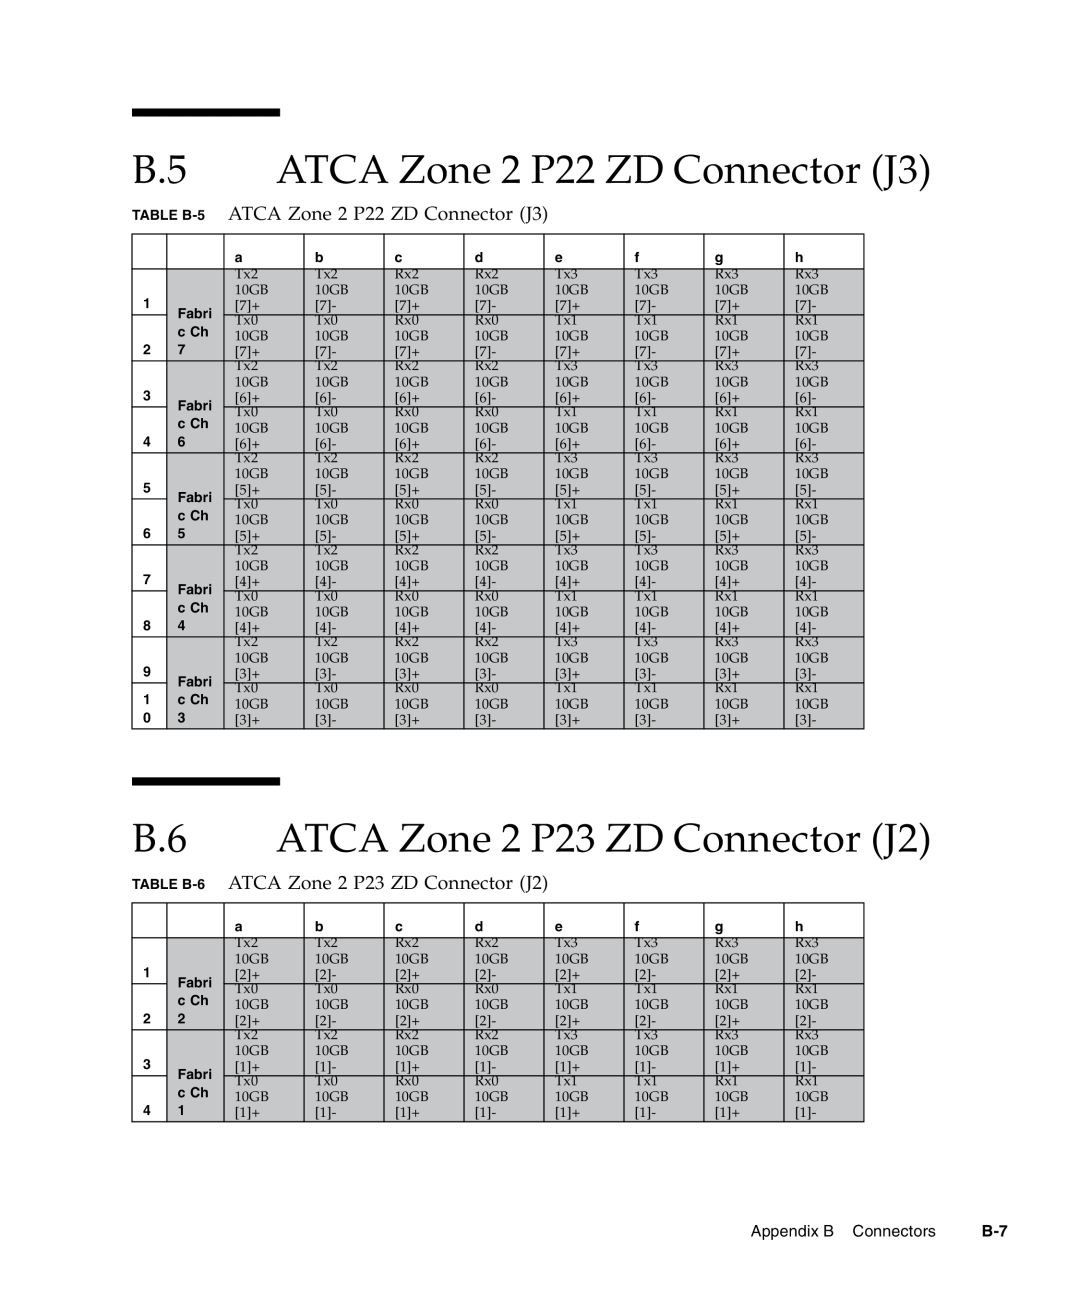 Sun Microsystems CP3240 manual ATCA Zone 2 P22 ZD Connector J3, ATCA Zone 2 P23 ZD Connector J2 